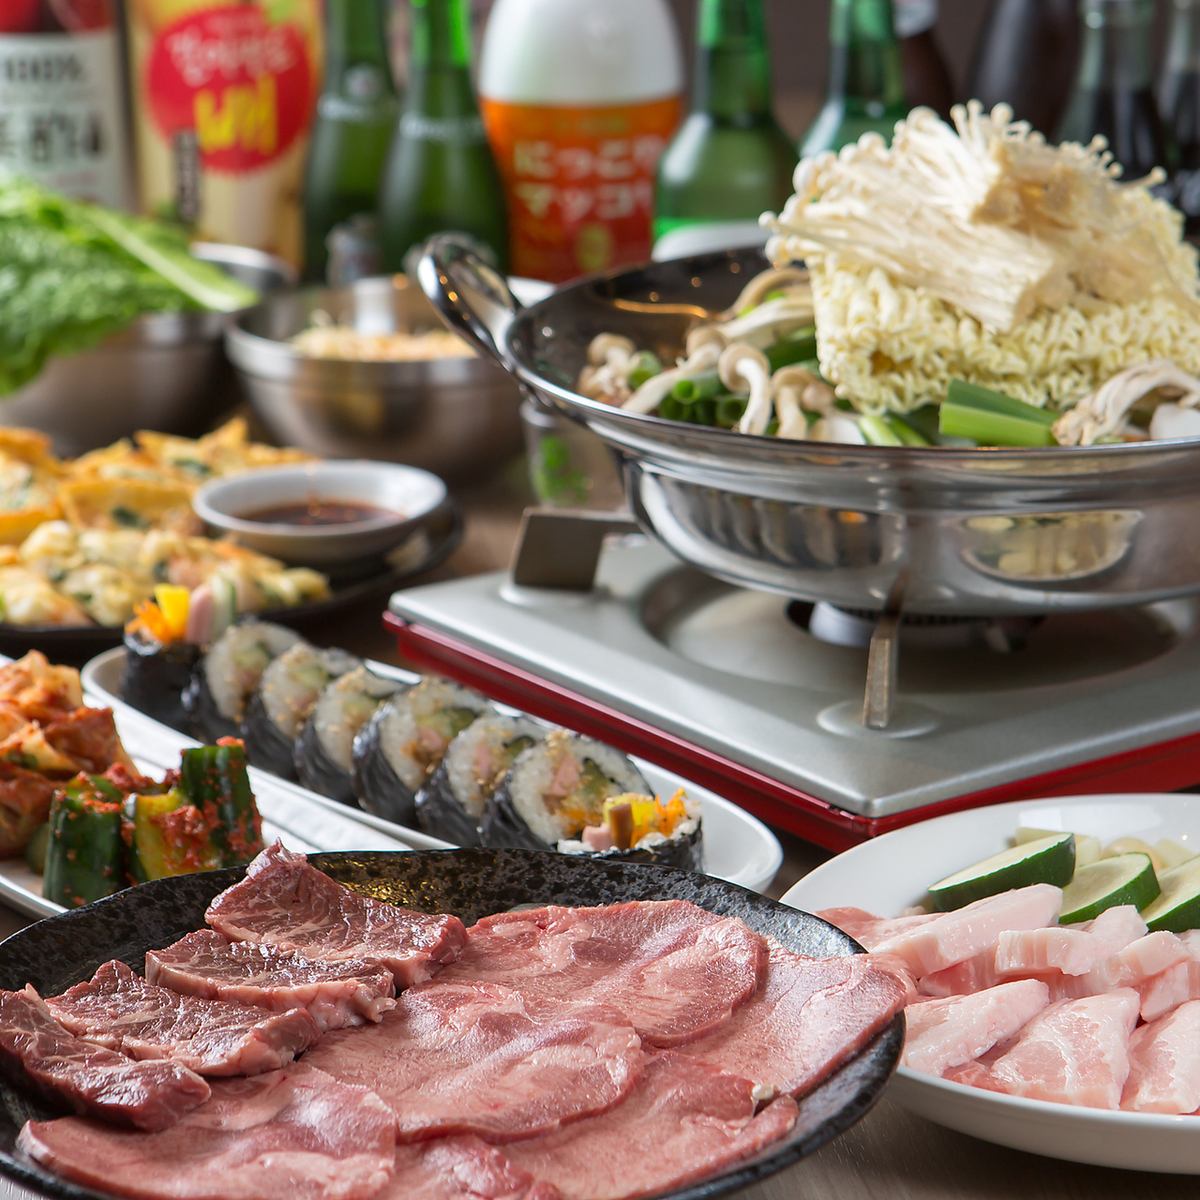 我們提供種類繁多的韓國食品和飲料。